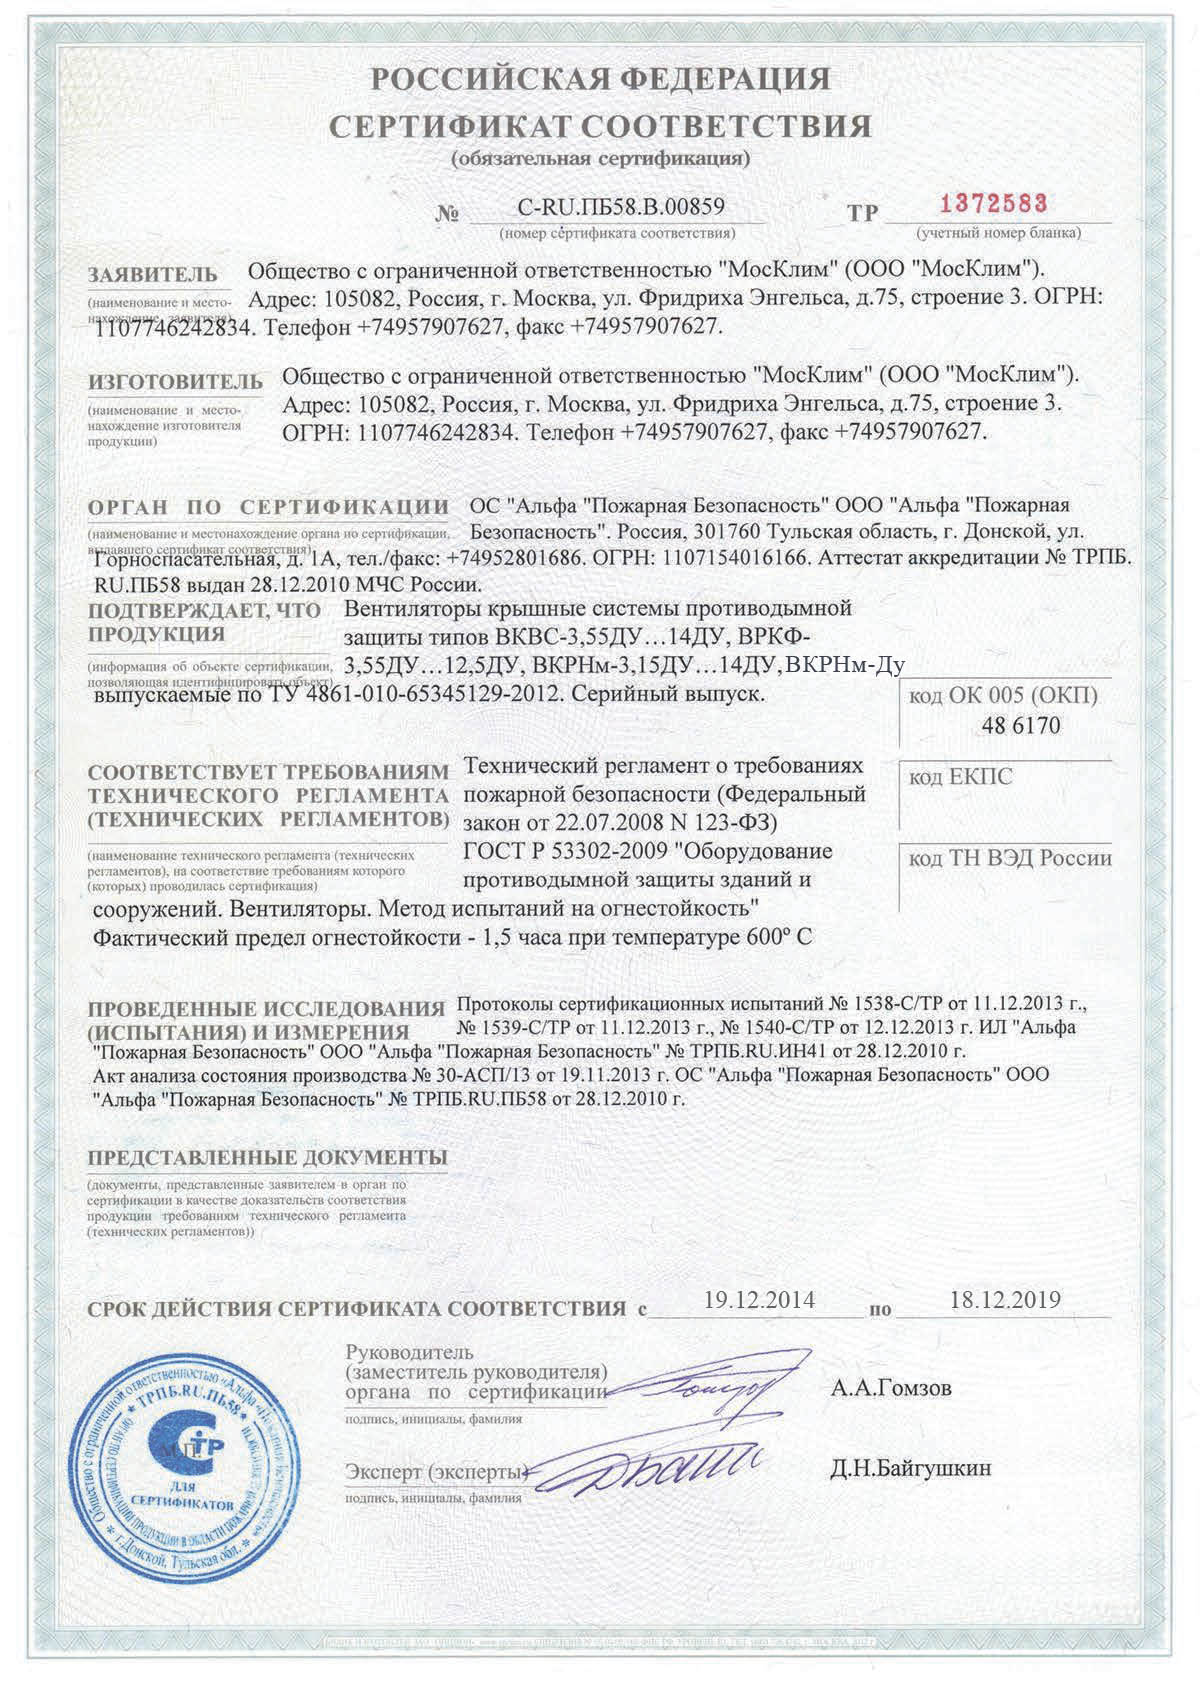 Сертификат соответствия ВКВС-Ду.ВРКФ-Ду,ВКРН-Ду  № С-RU.ПБ58.В.00859 от 19.12.2013